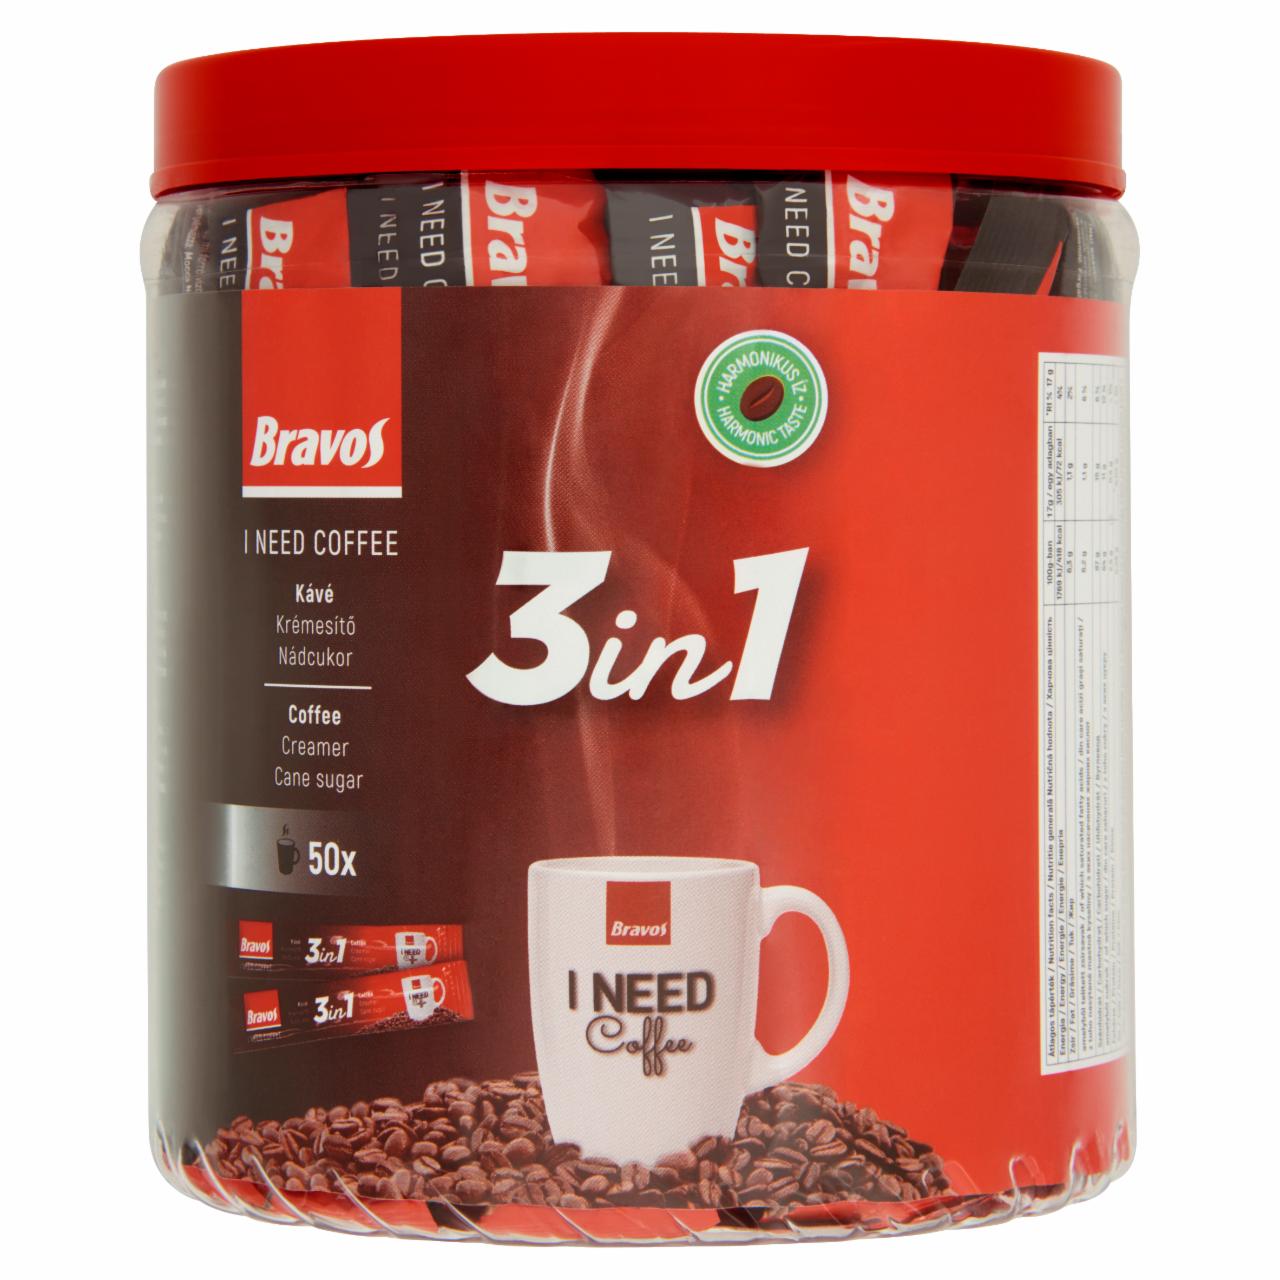 Képek - Bravos 3in1 instant kávéspecialitás 50 x 17 g (170 g)